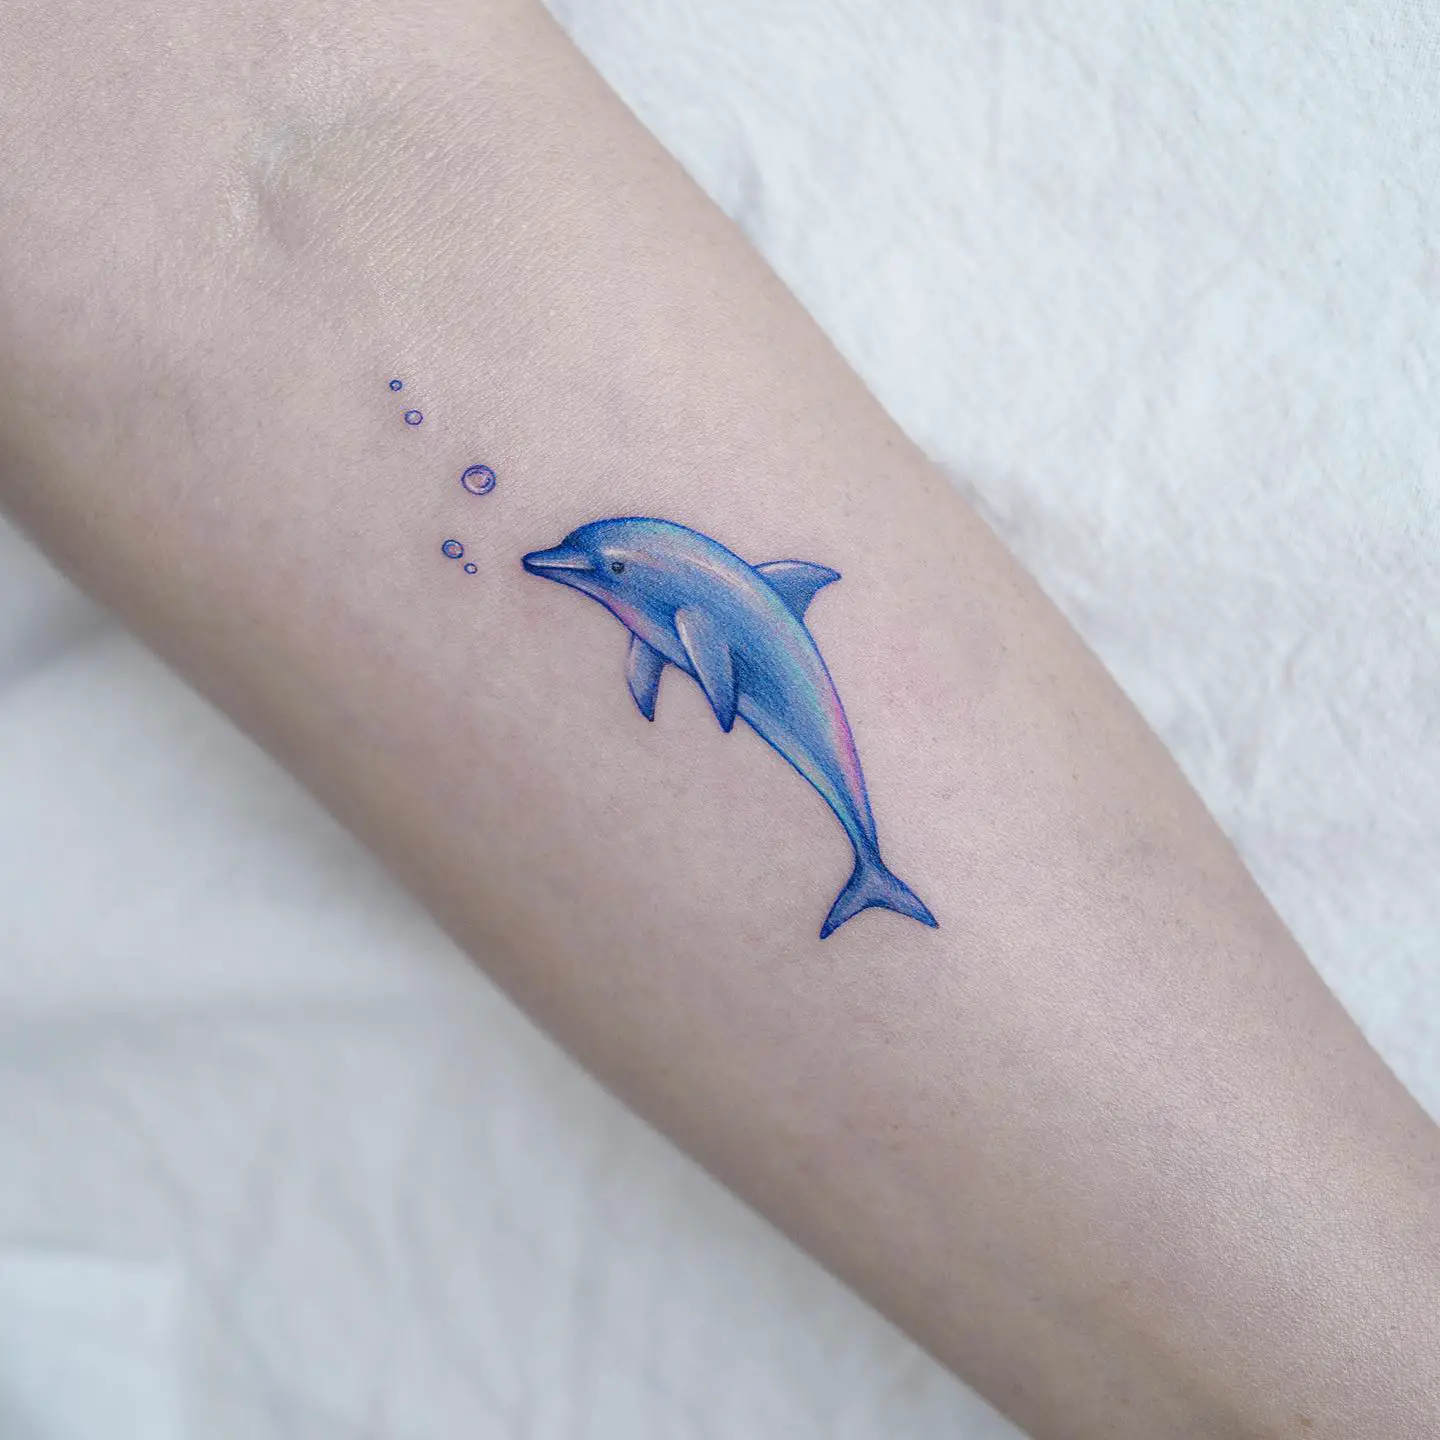 Cute dolphin tattoo by tattooist pool